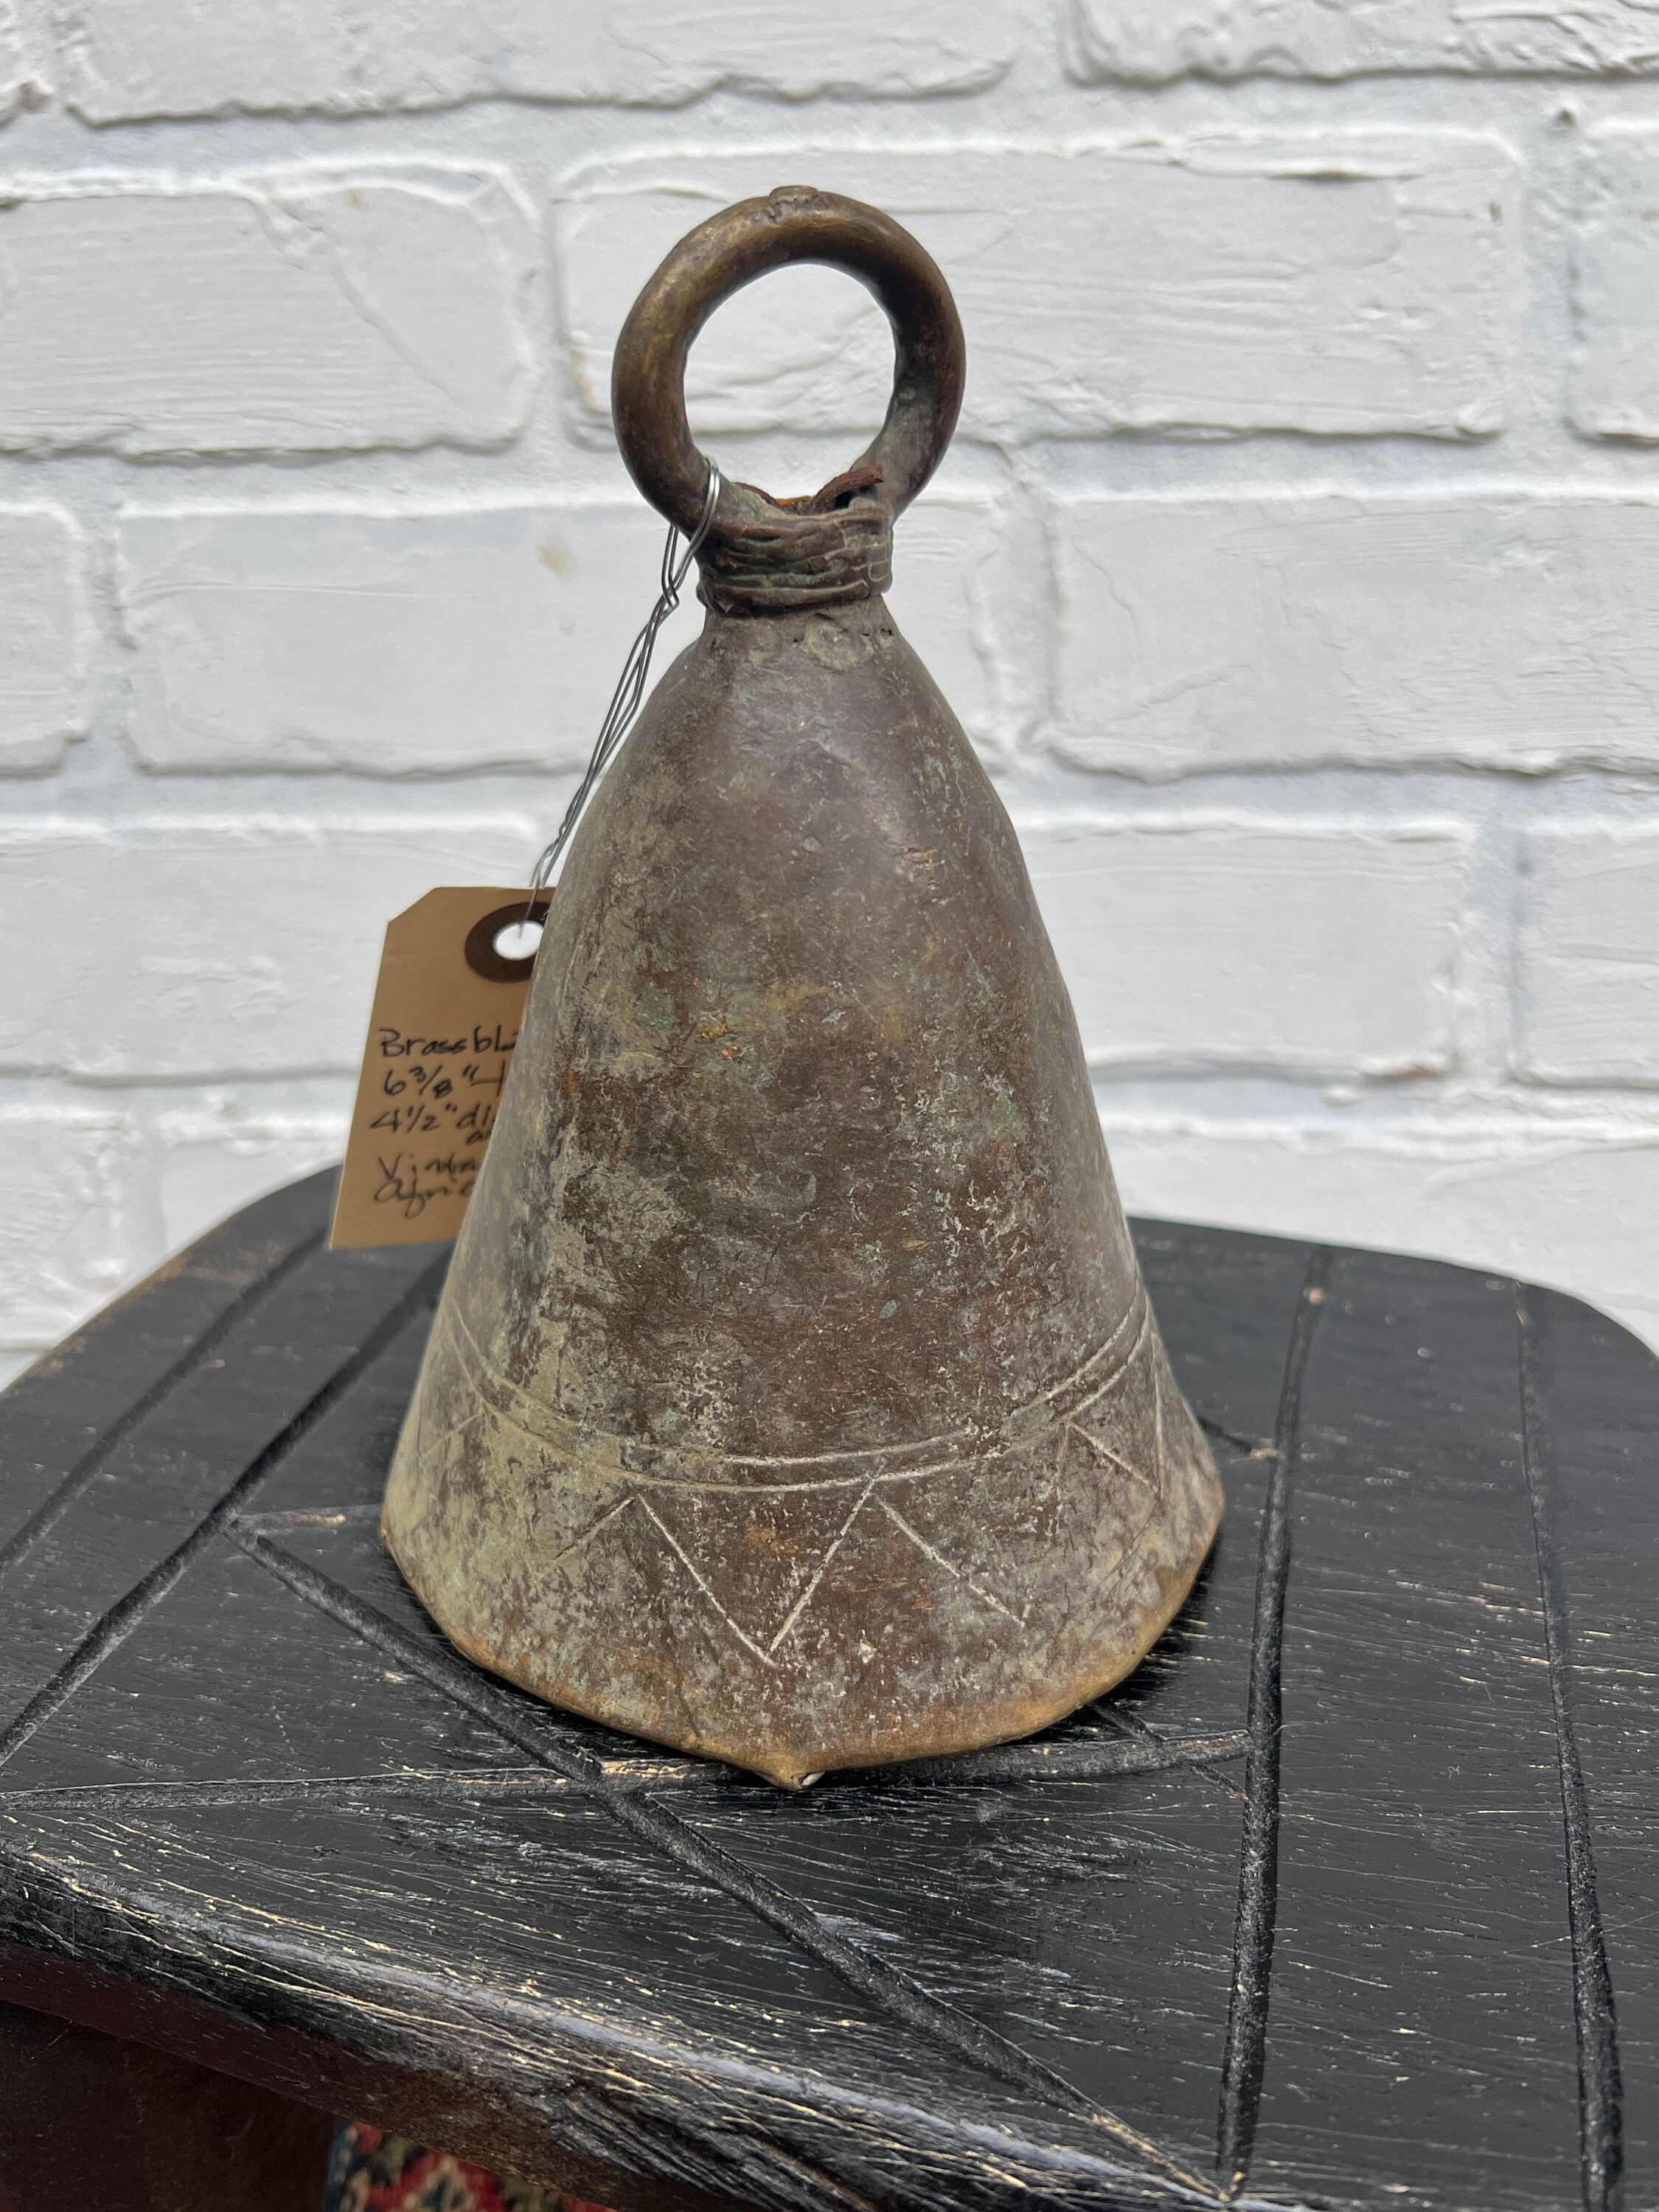 Vintage cow bells, Set of 3 Bronze Bells, Rustic African Hand Made